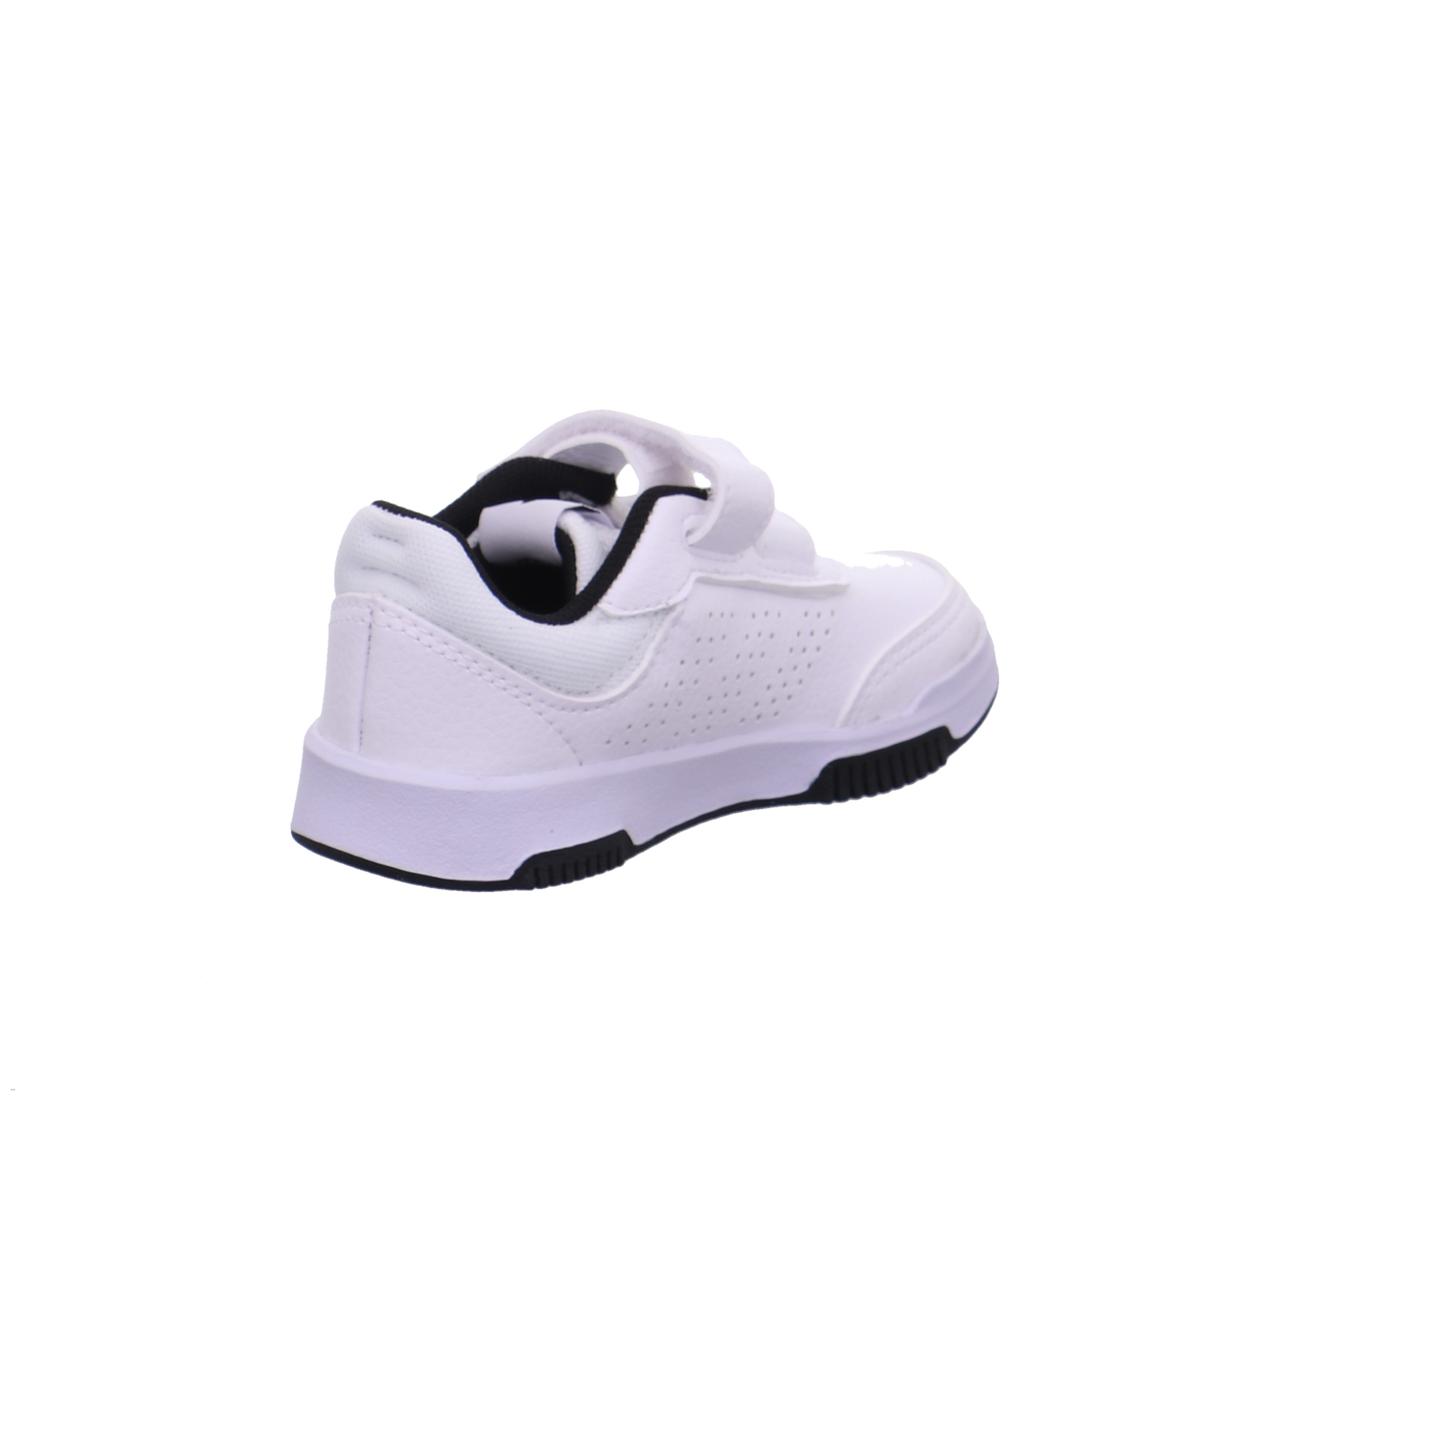 Adidas Halbschuhe weiß-schwarz Bild5